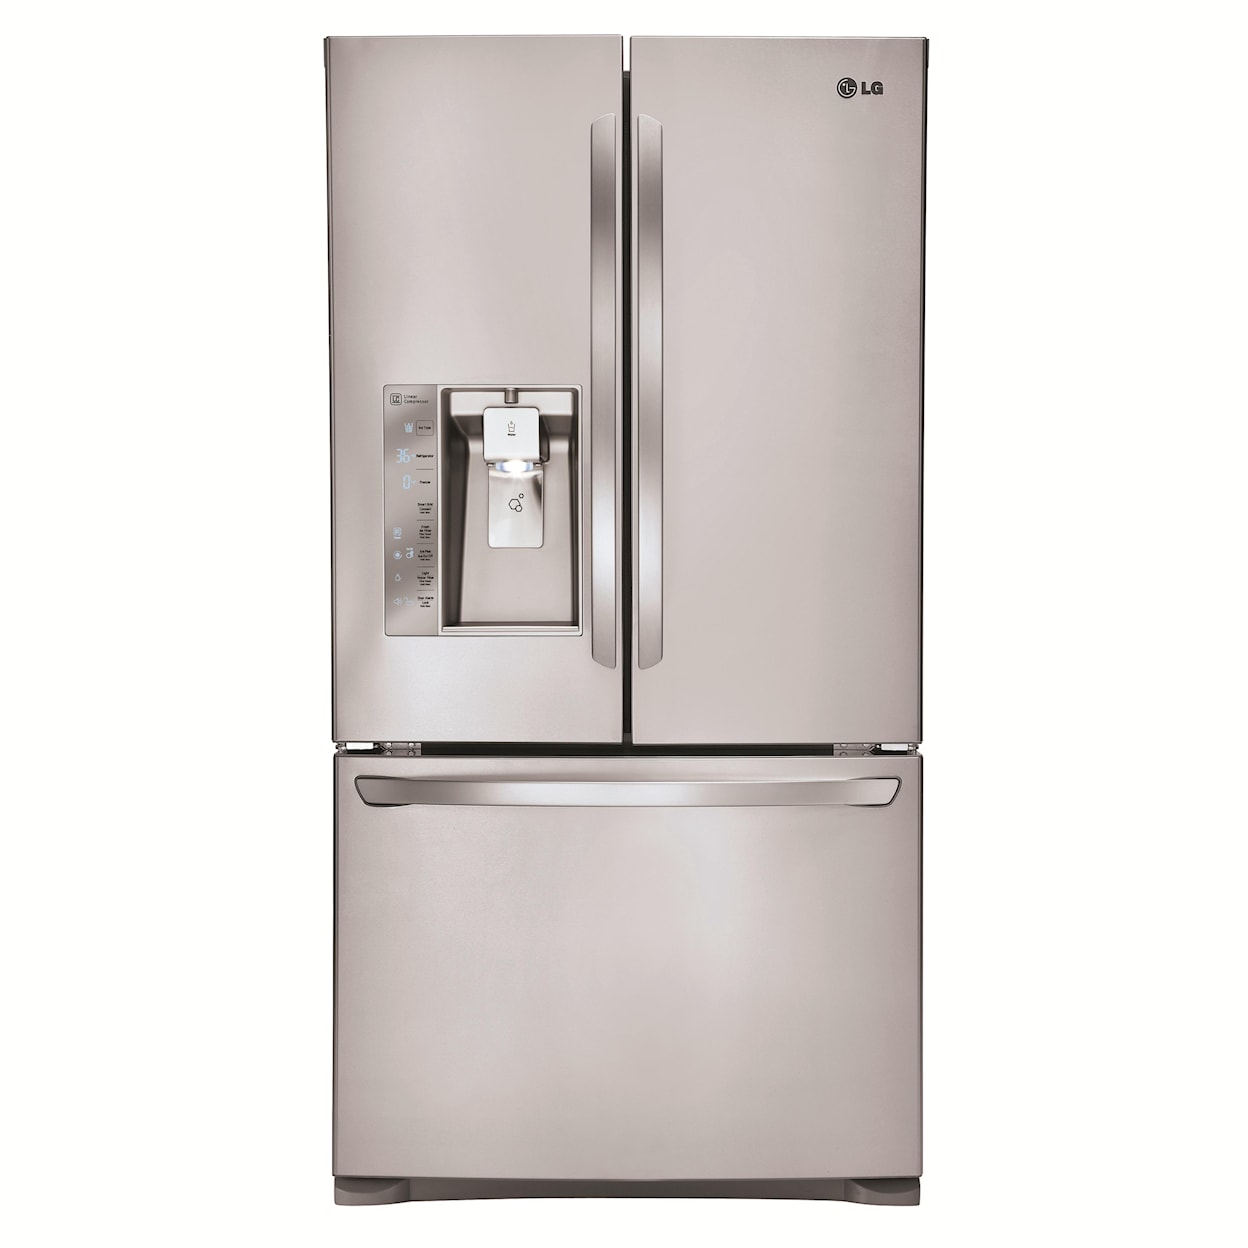 Lg Refrigerator Lfxc24726s Clean Energy Rebate